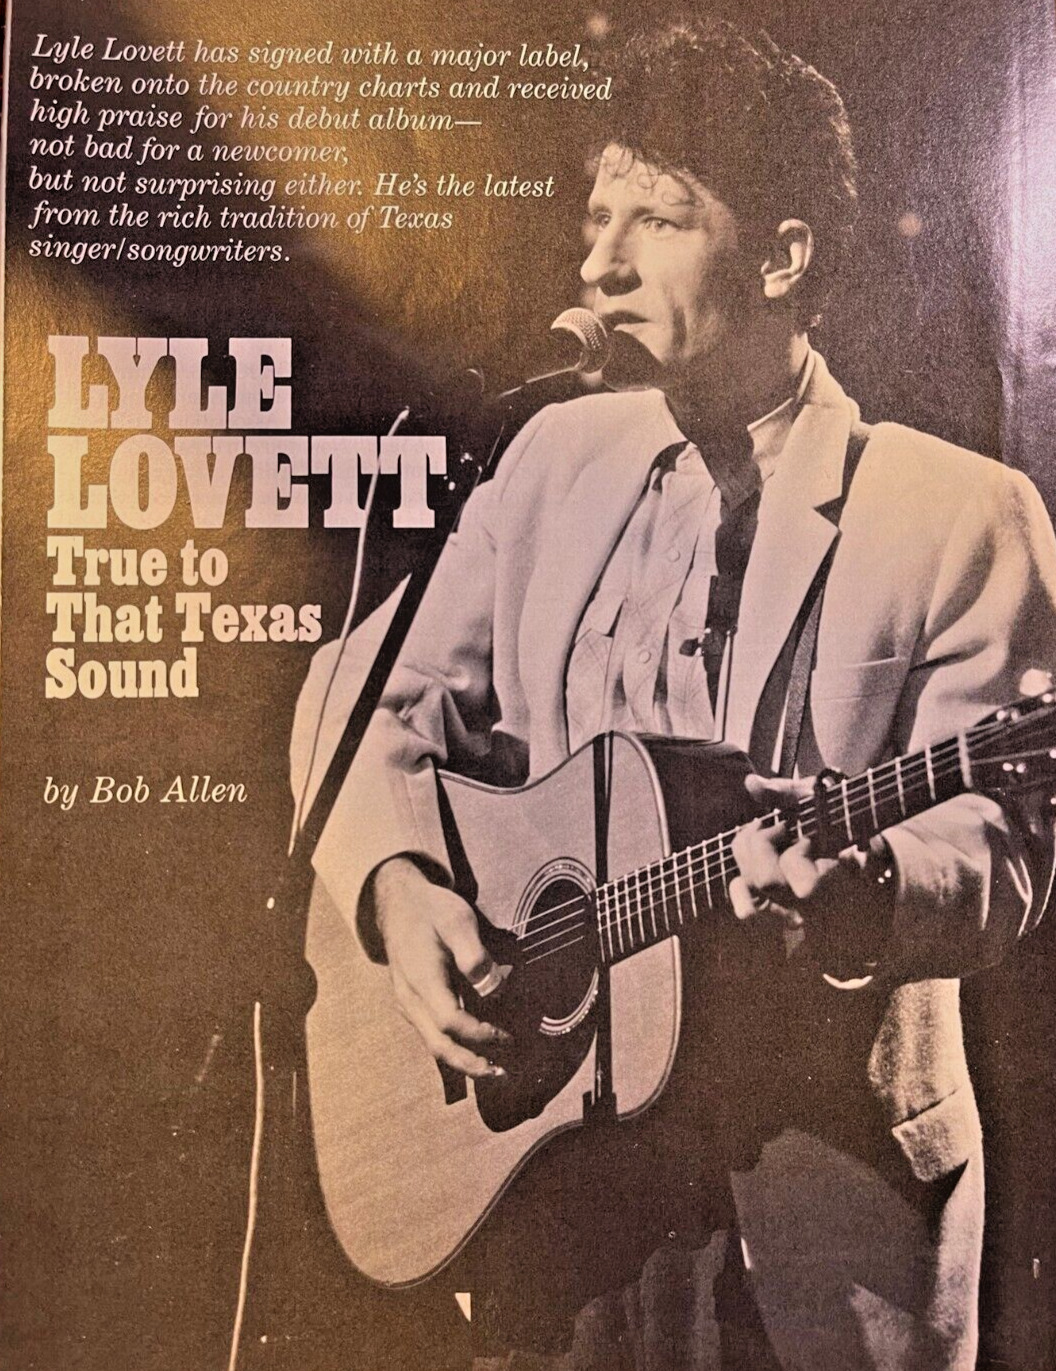 1987 Country Singer Lyle Lovett